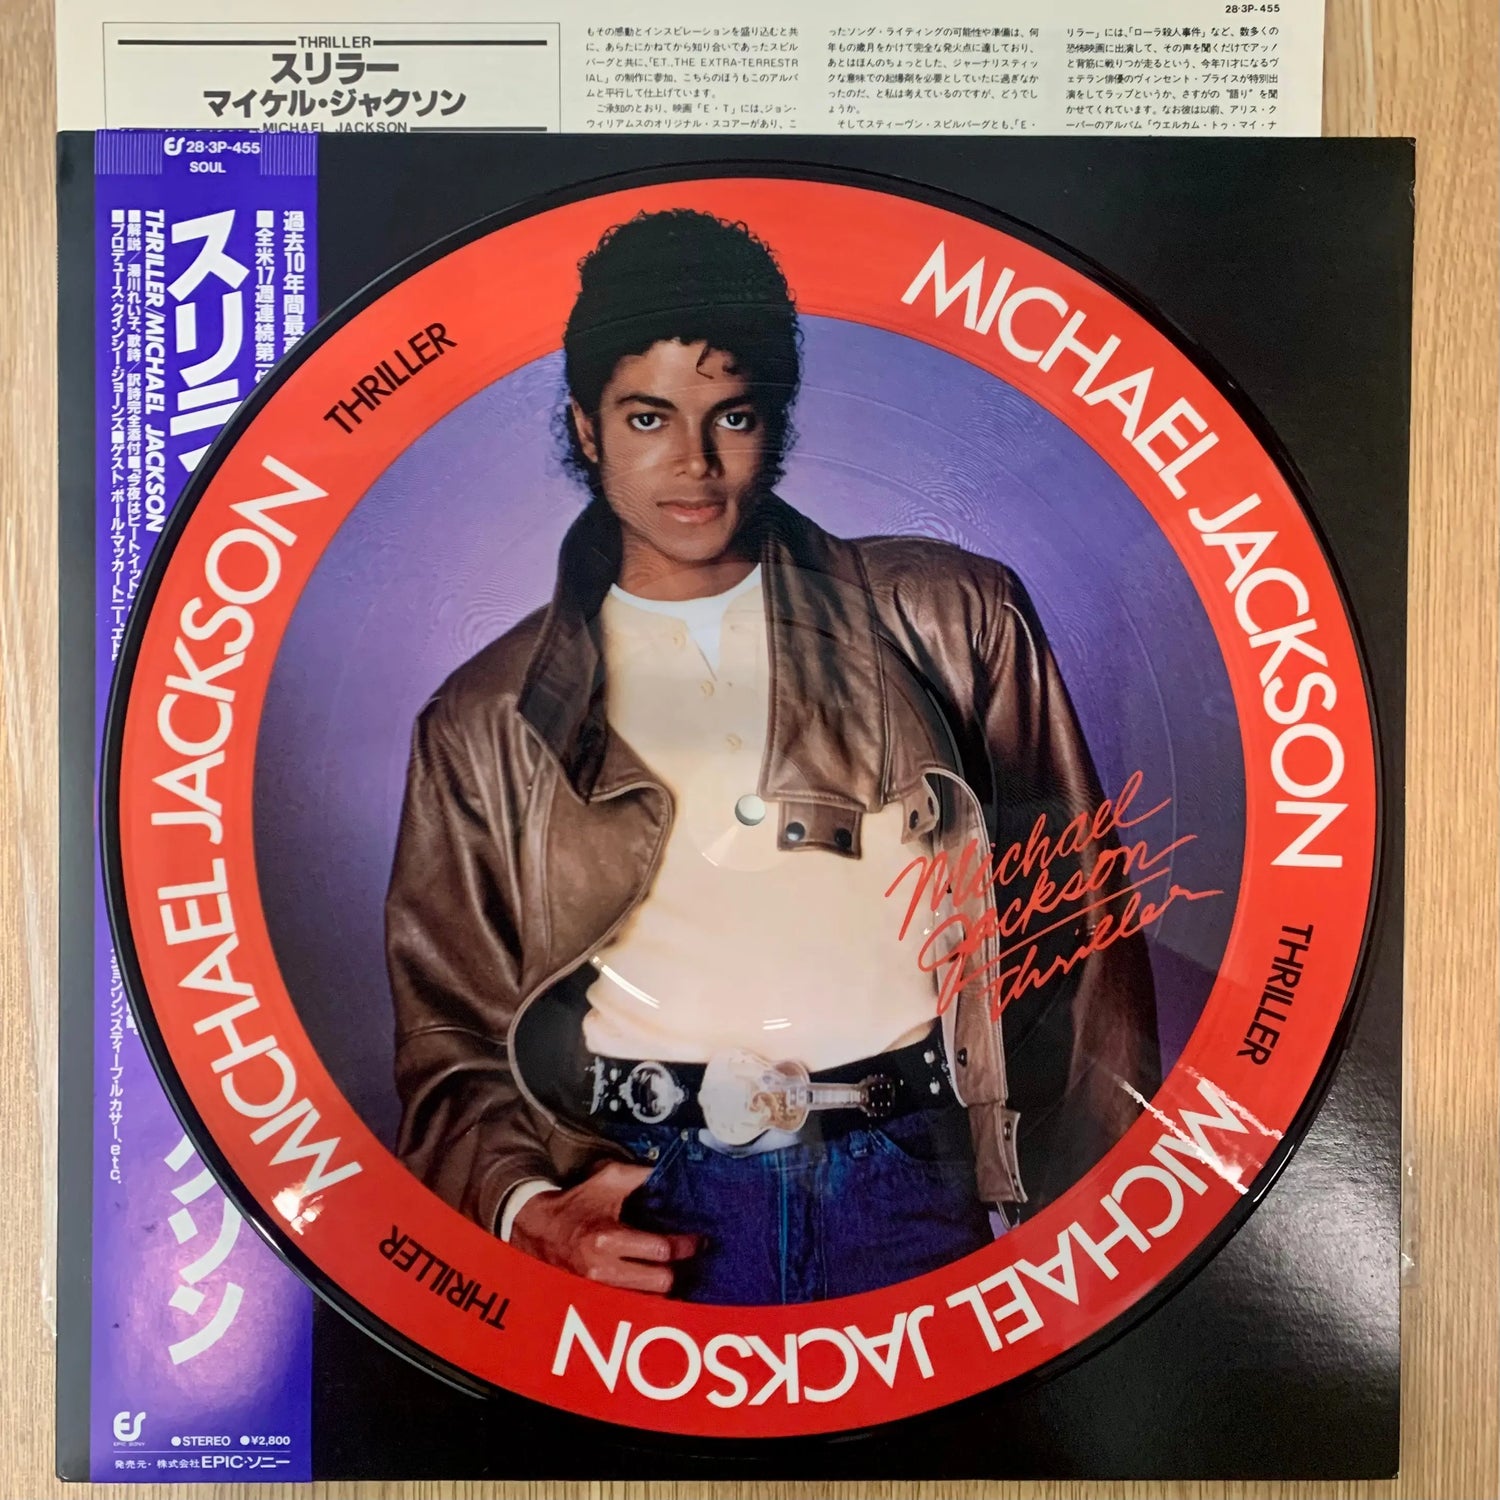 Michael Jackson – The Original Soul Of Michael Jackson LP